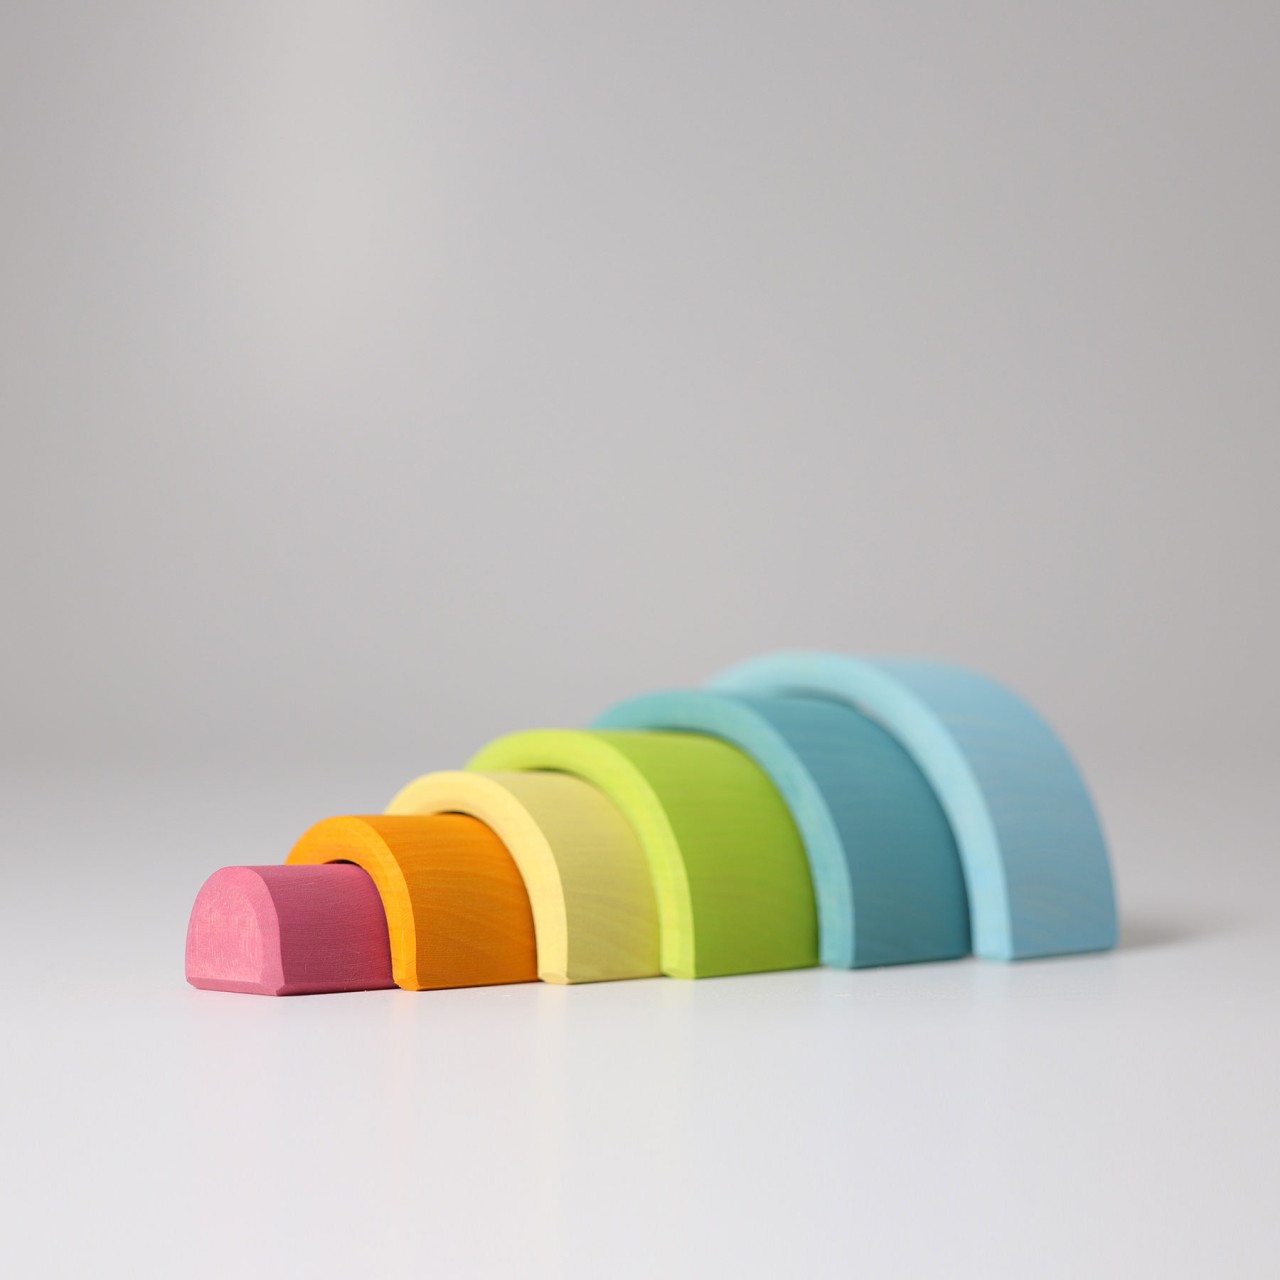 GRIMM'S Regenbogen klein, pastell für Kinder ab 3 Jahren